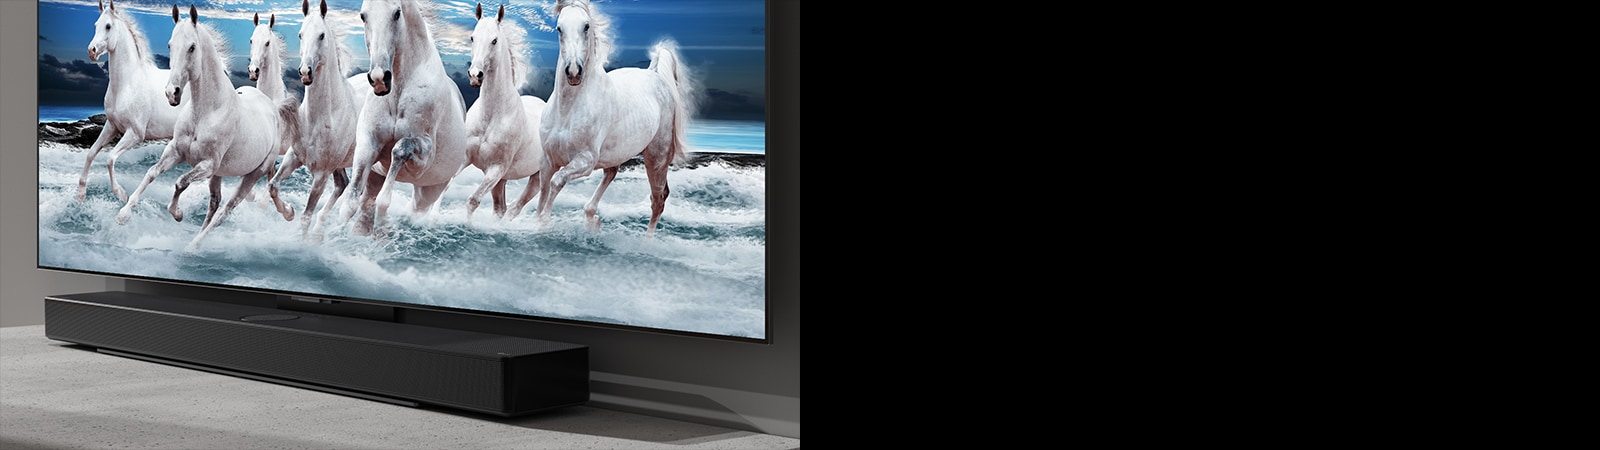 Sound bar i televizor nalaze se na bijelom stolu, a na televizoru se prikazuje 7 bijelih konja.